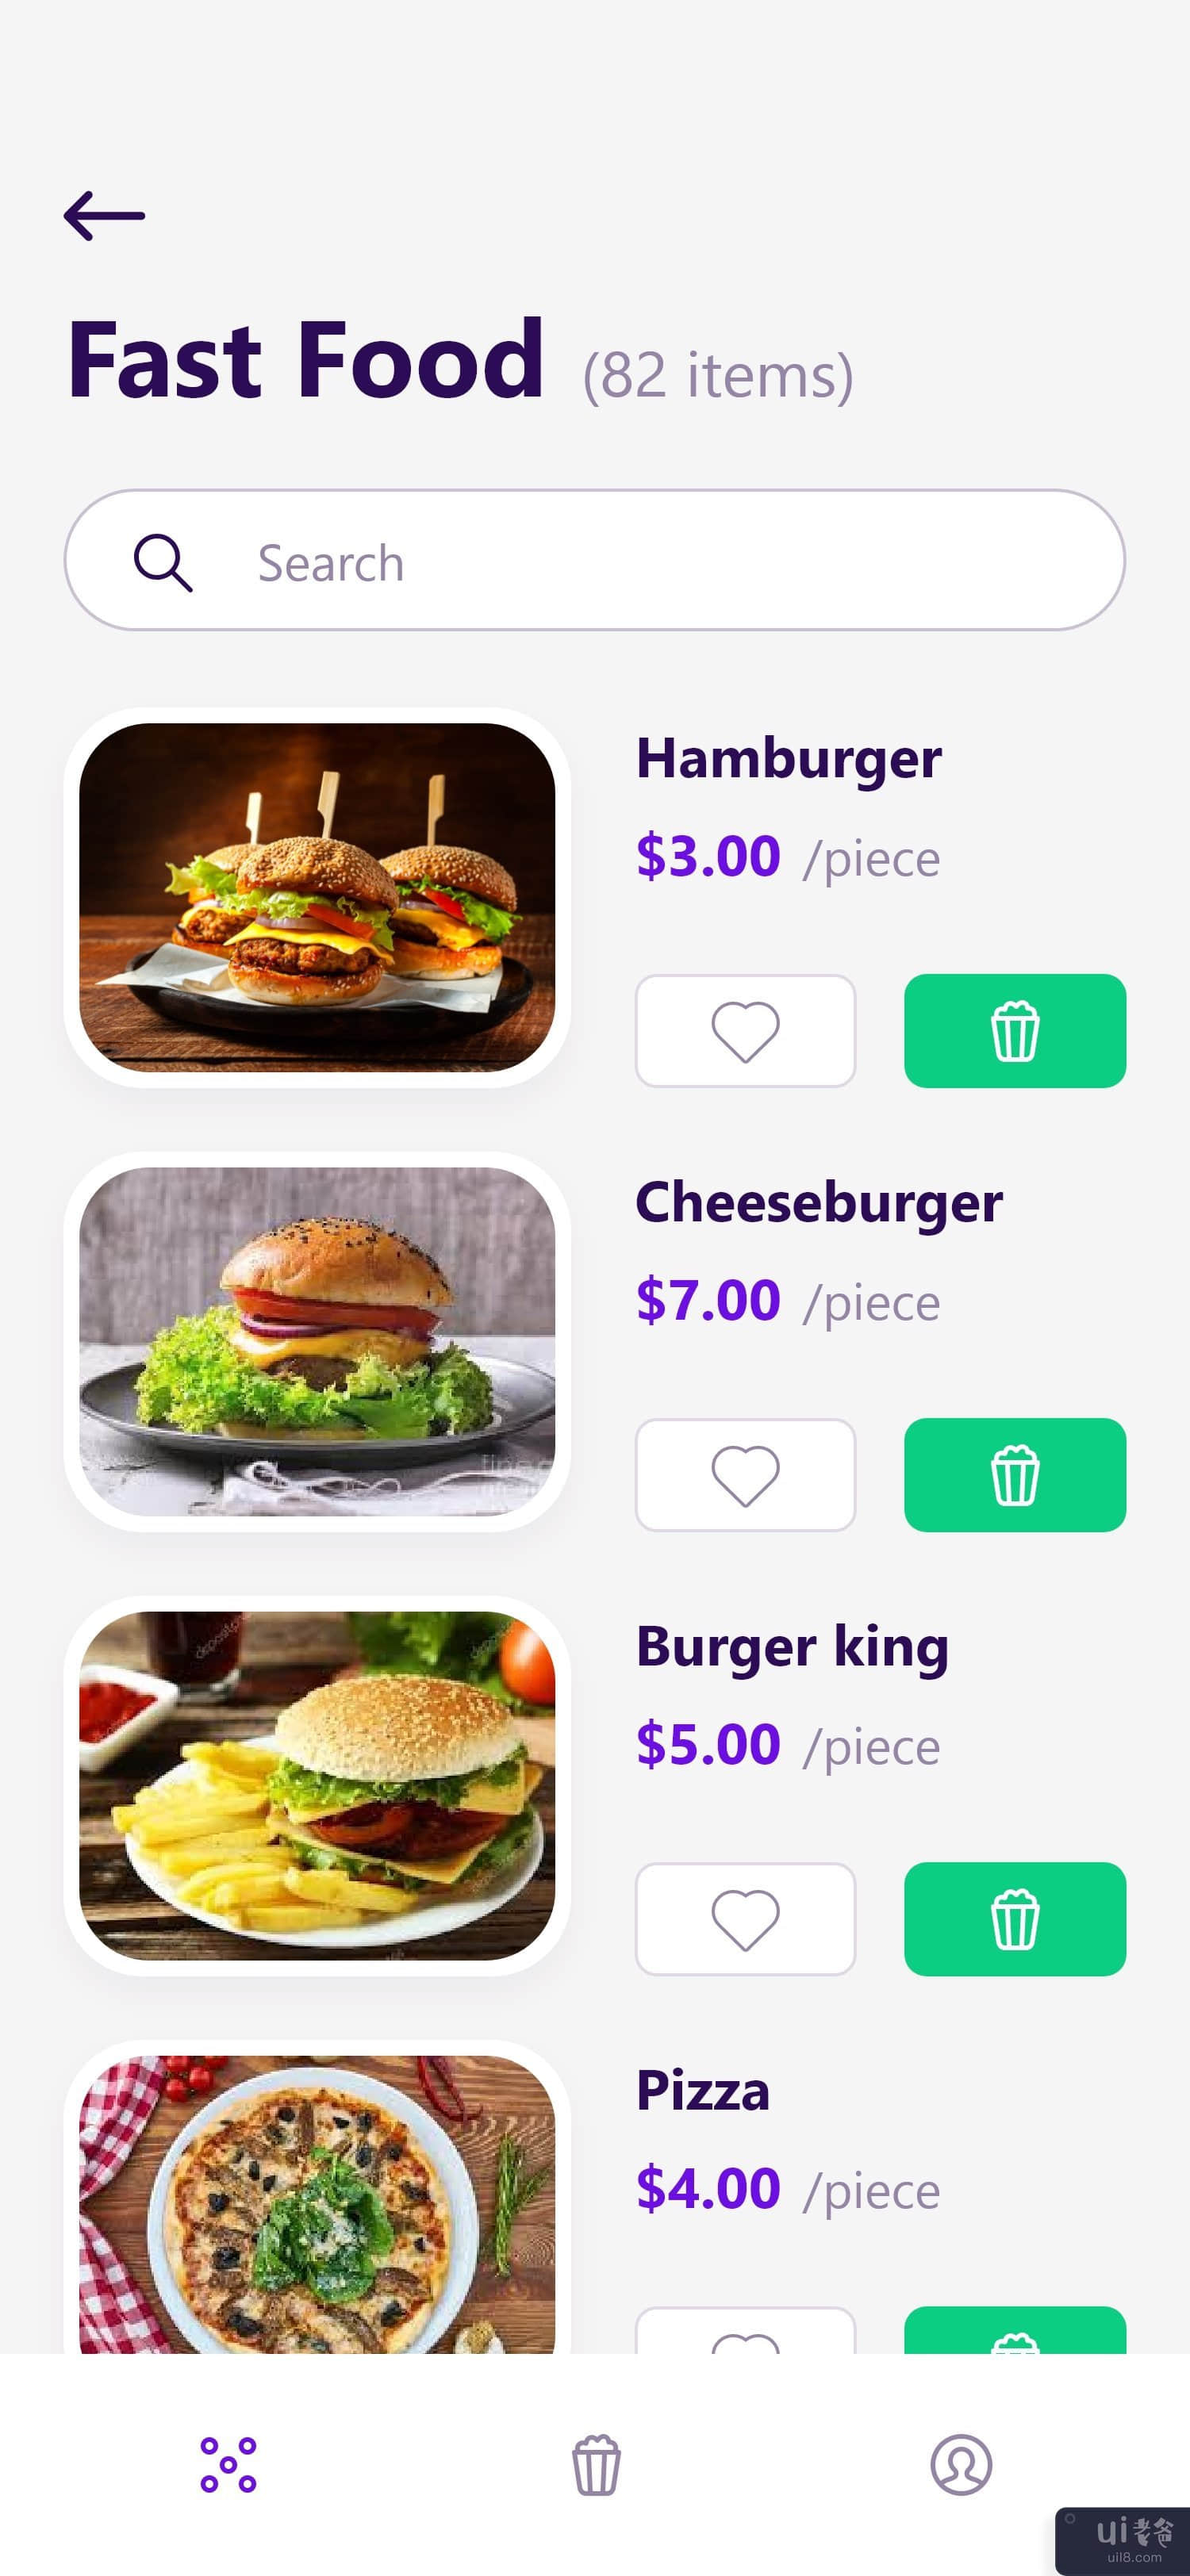 送餐应用 UI 概念 #4(Food delivery app UI concept #4)插图